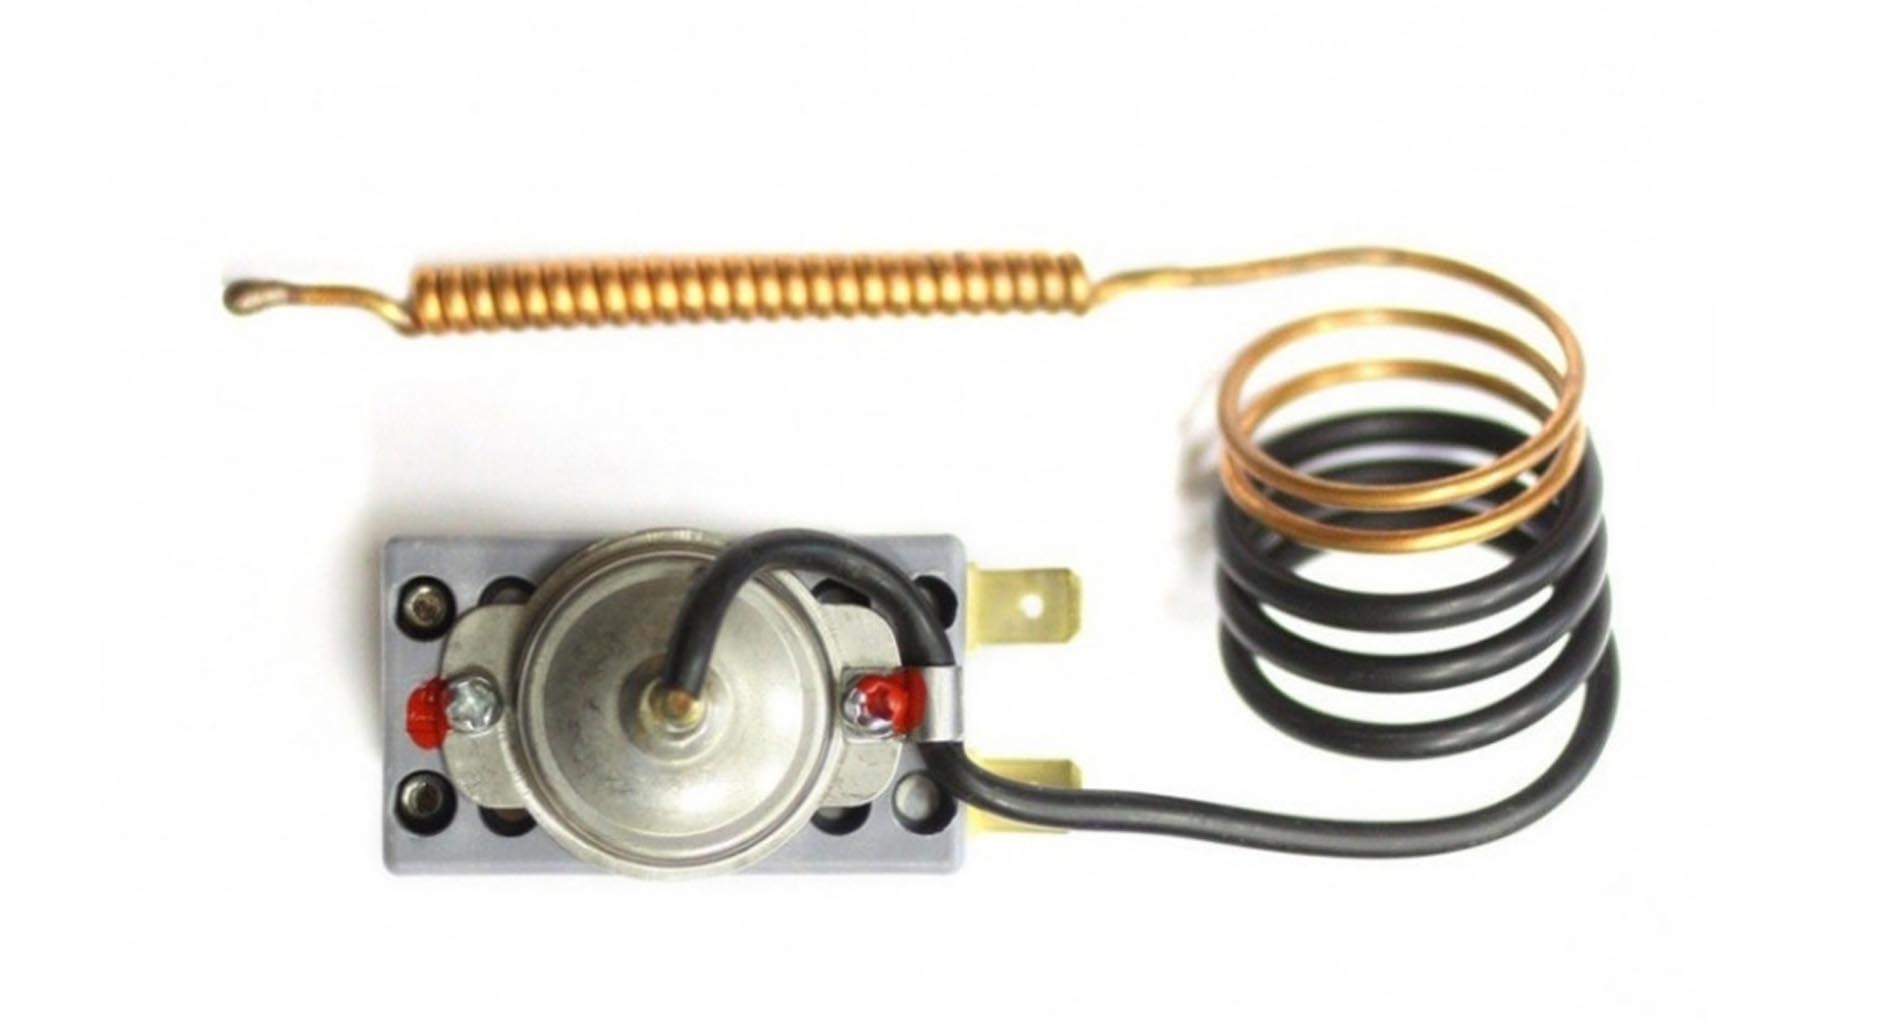 Термостат защитный для водонагревателя Thermex, Ariston, Electrolux 16А до 110°С капиллярный самовозвратный, 100324